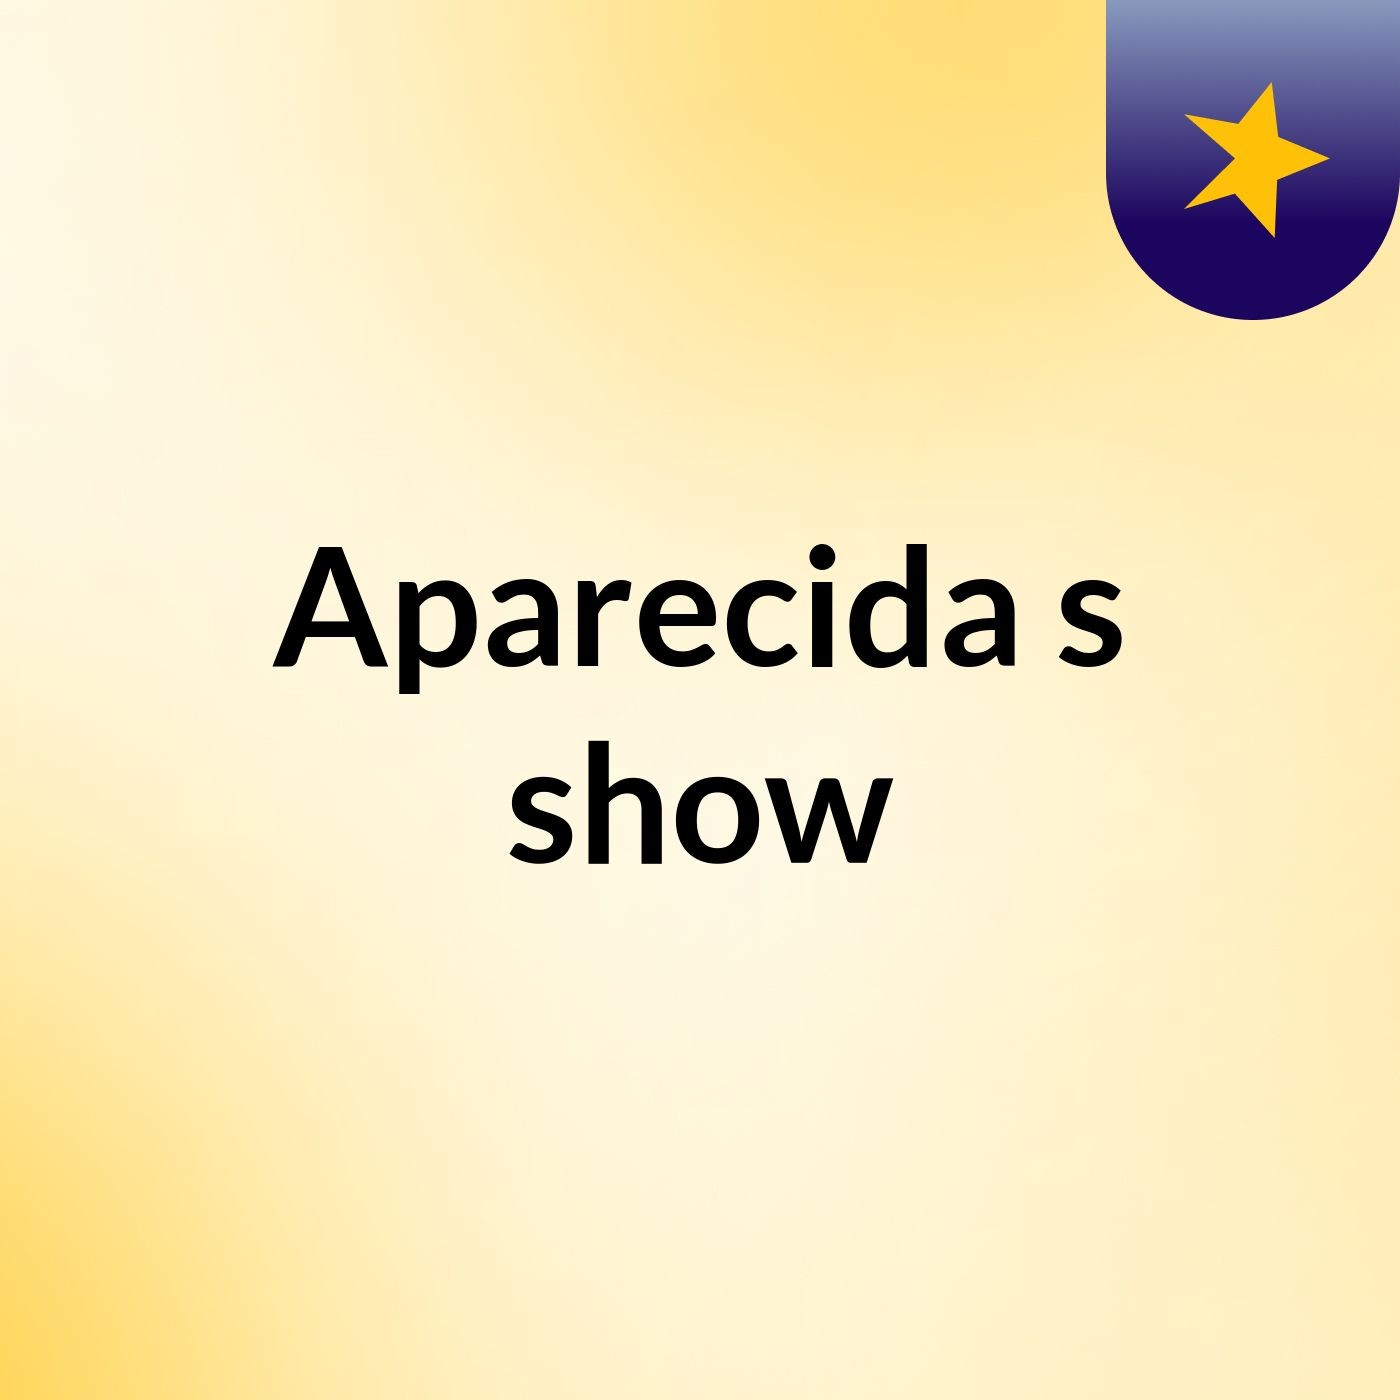 Aparecida's show